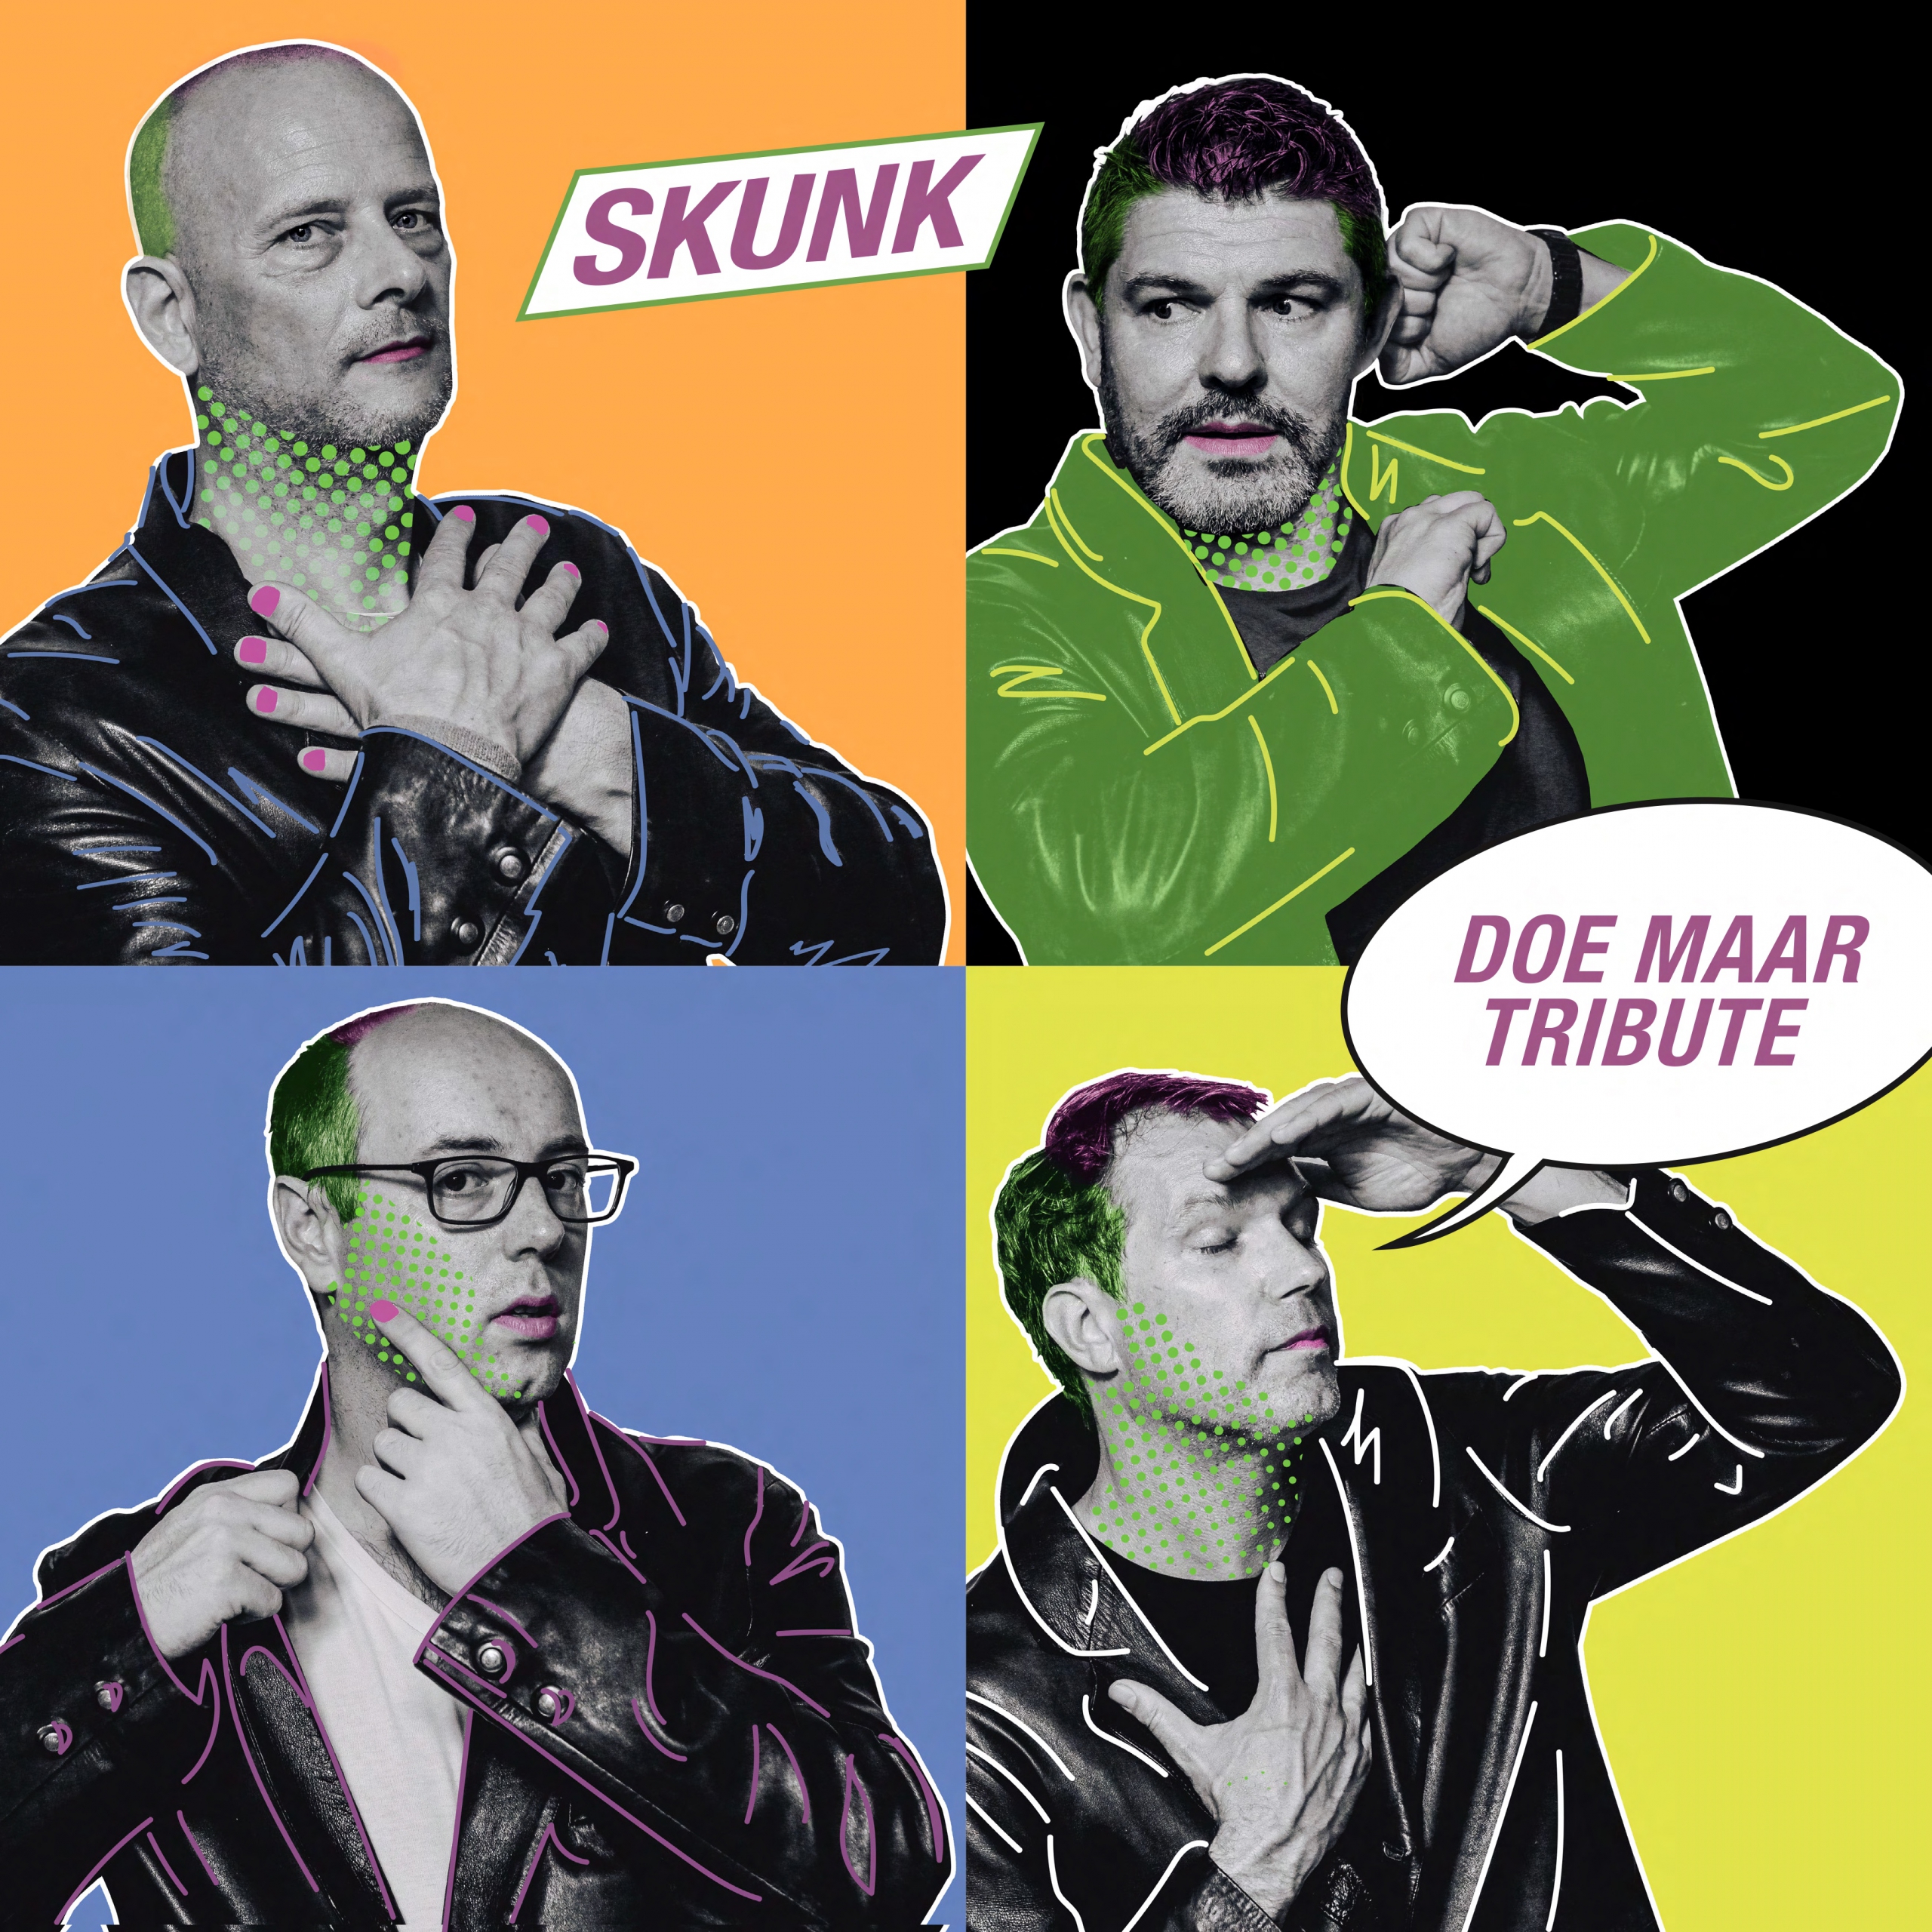 Skunk – Doe Maar Tributeband